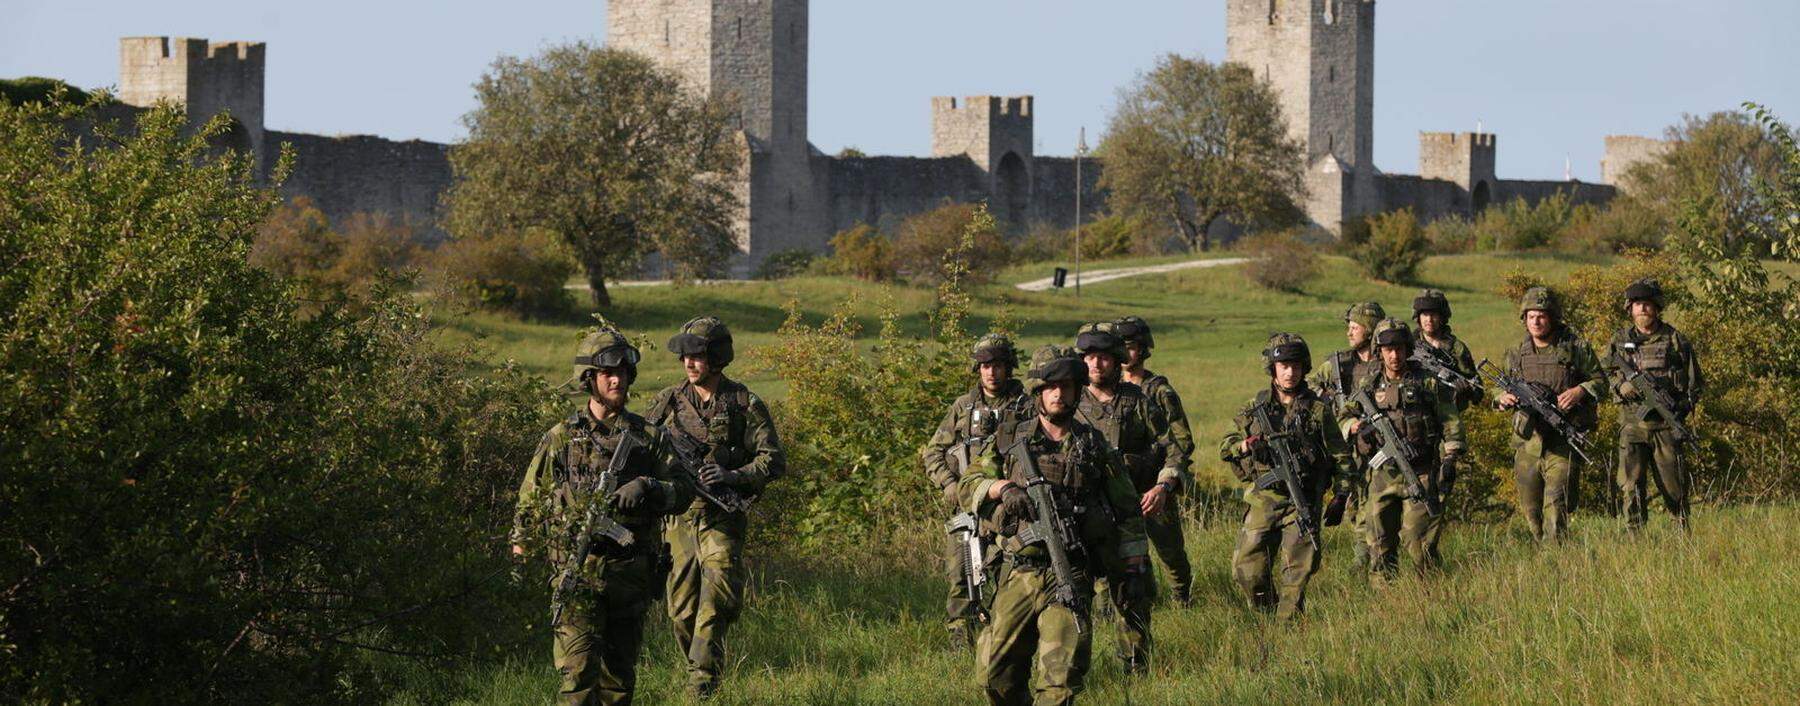 2016 kehrten Soldaten auf Gotland zurück und patrouillierten wie hier auch vor einem ikonischen Motiv: der mittelalterlichen Stadtmauer der Hafenstadt Visby.